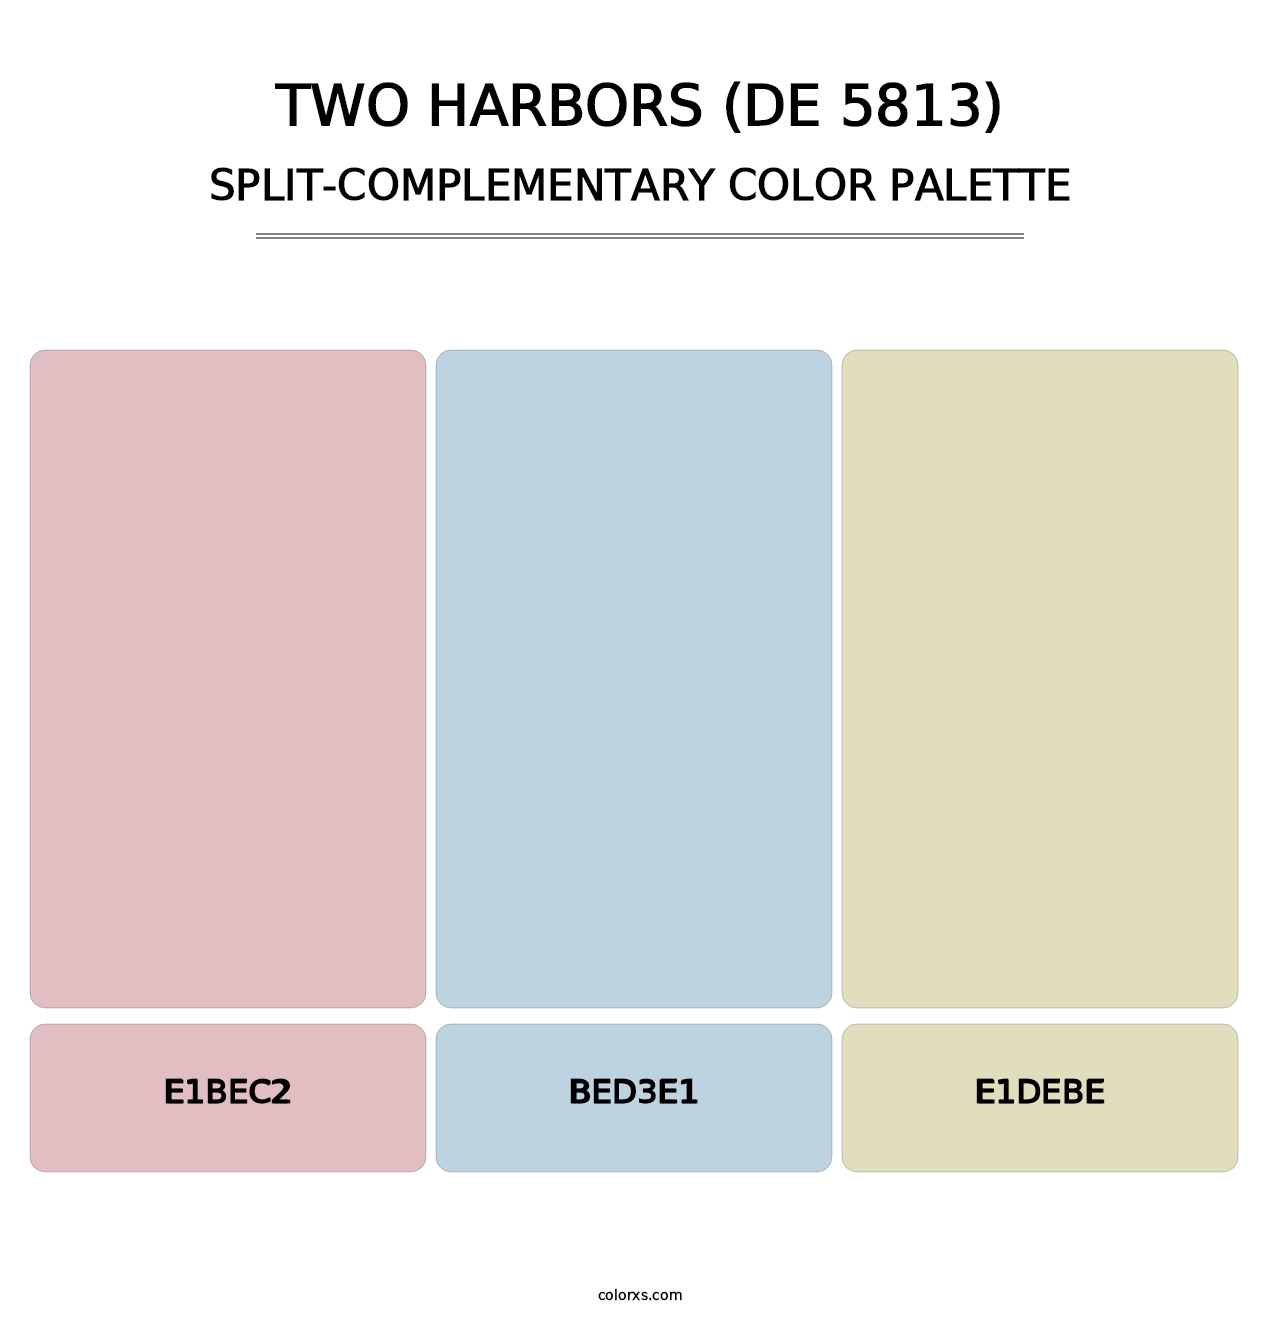 Two Harbors (DE 5813) - Split-Complementary Color Palette